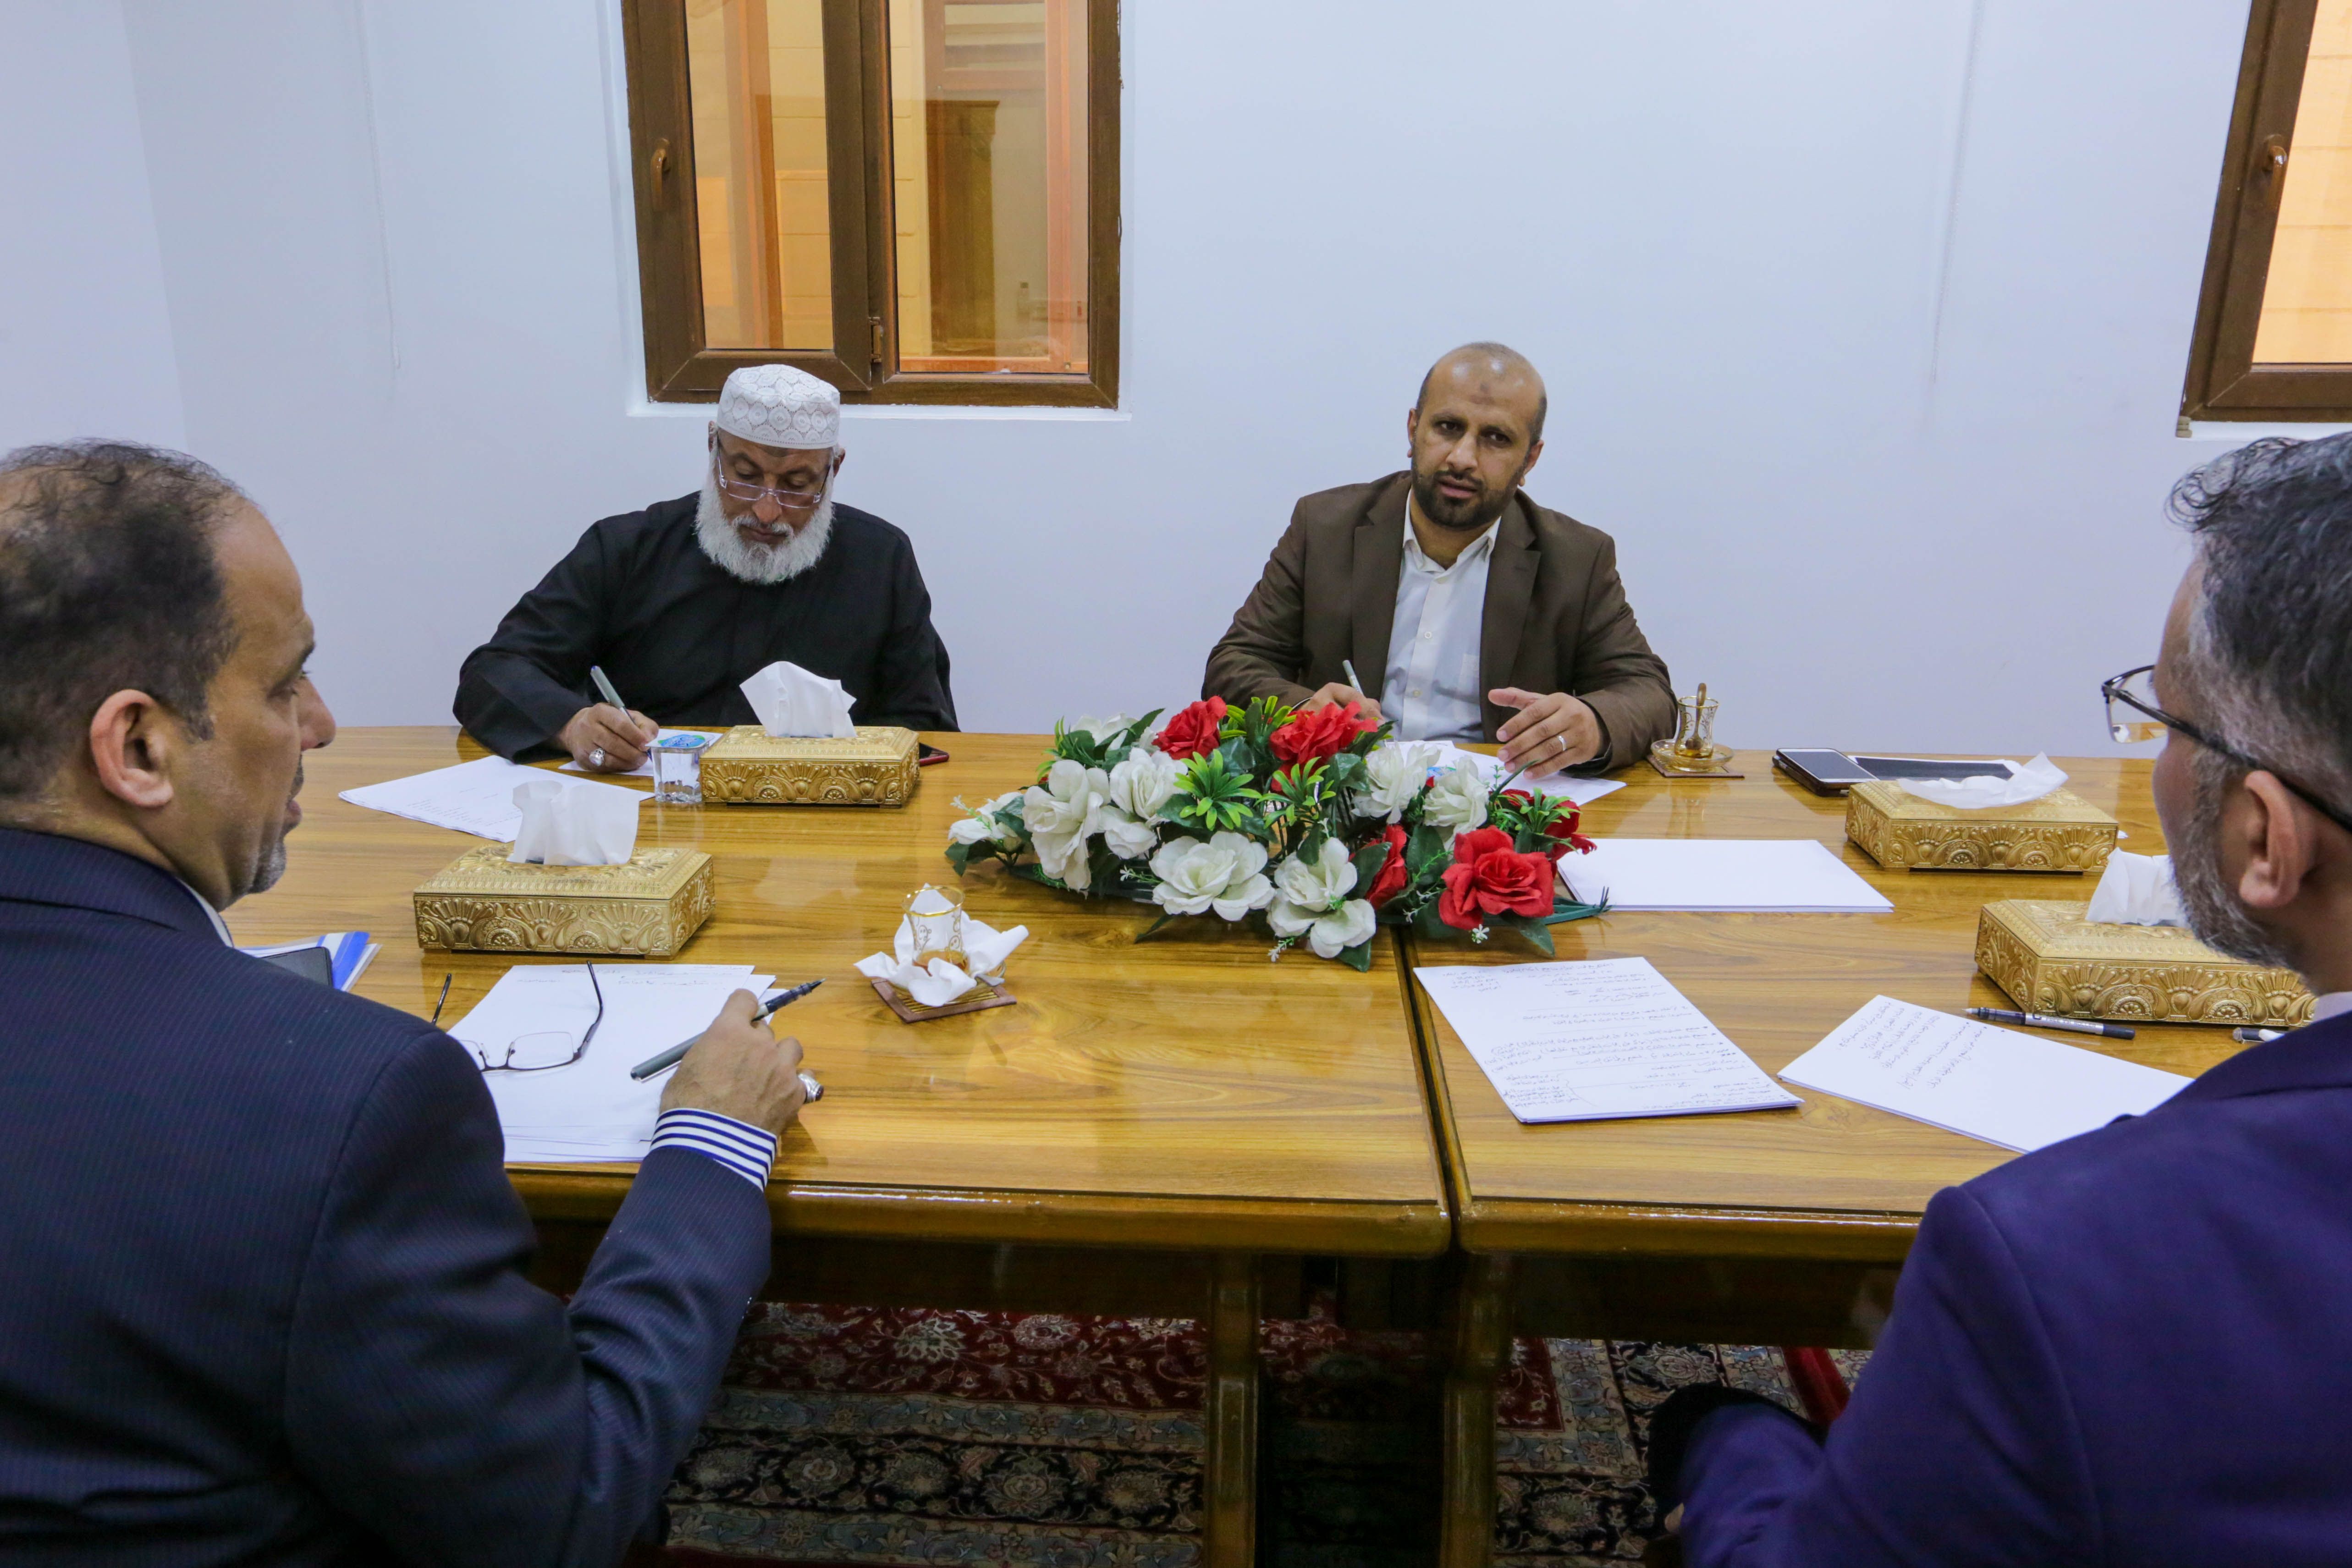 معهد القرآن الكريم يعلن عن انطلاق مشروع إعداد المناهج القرآنية